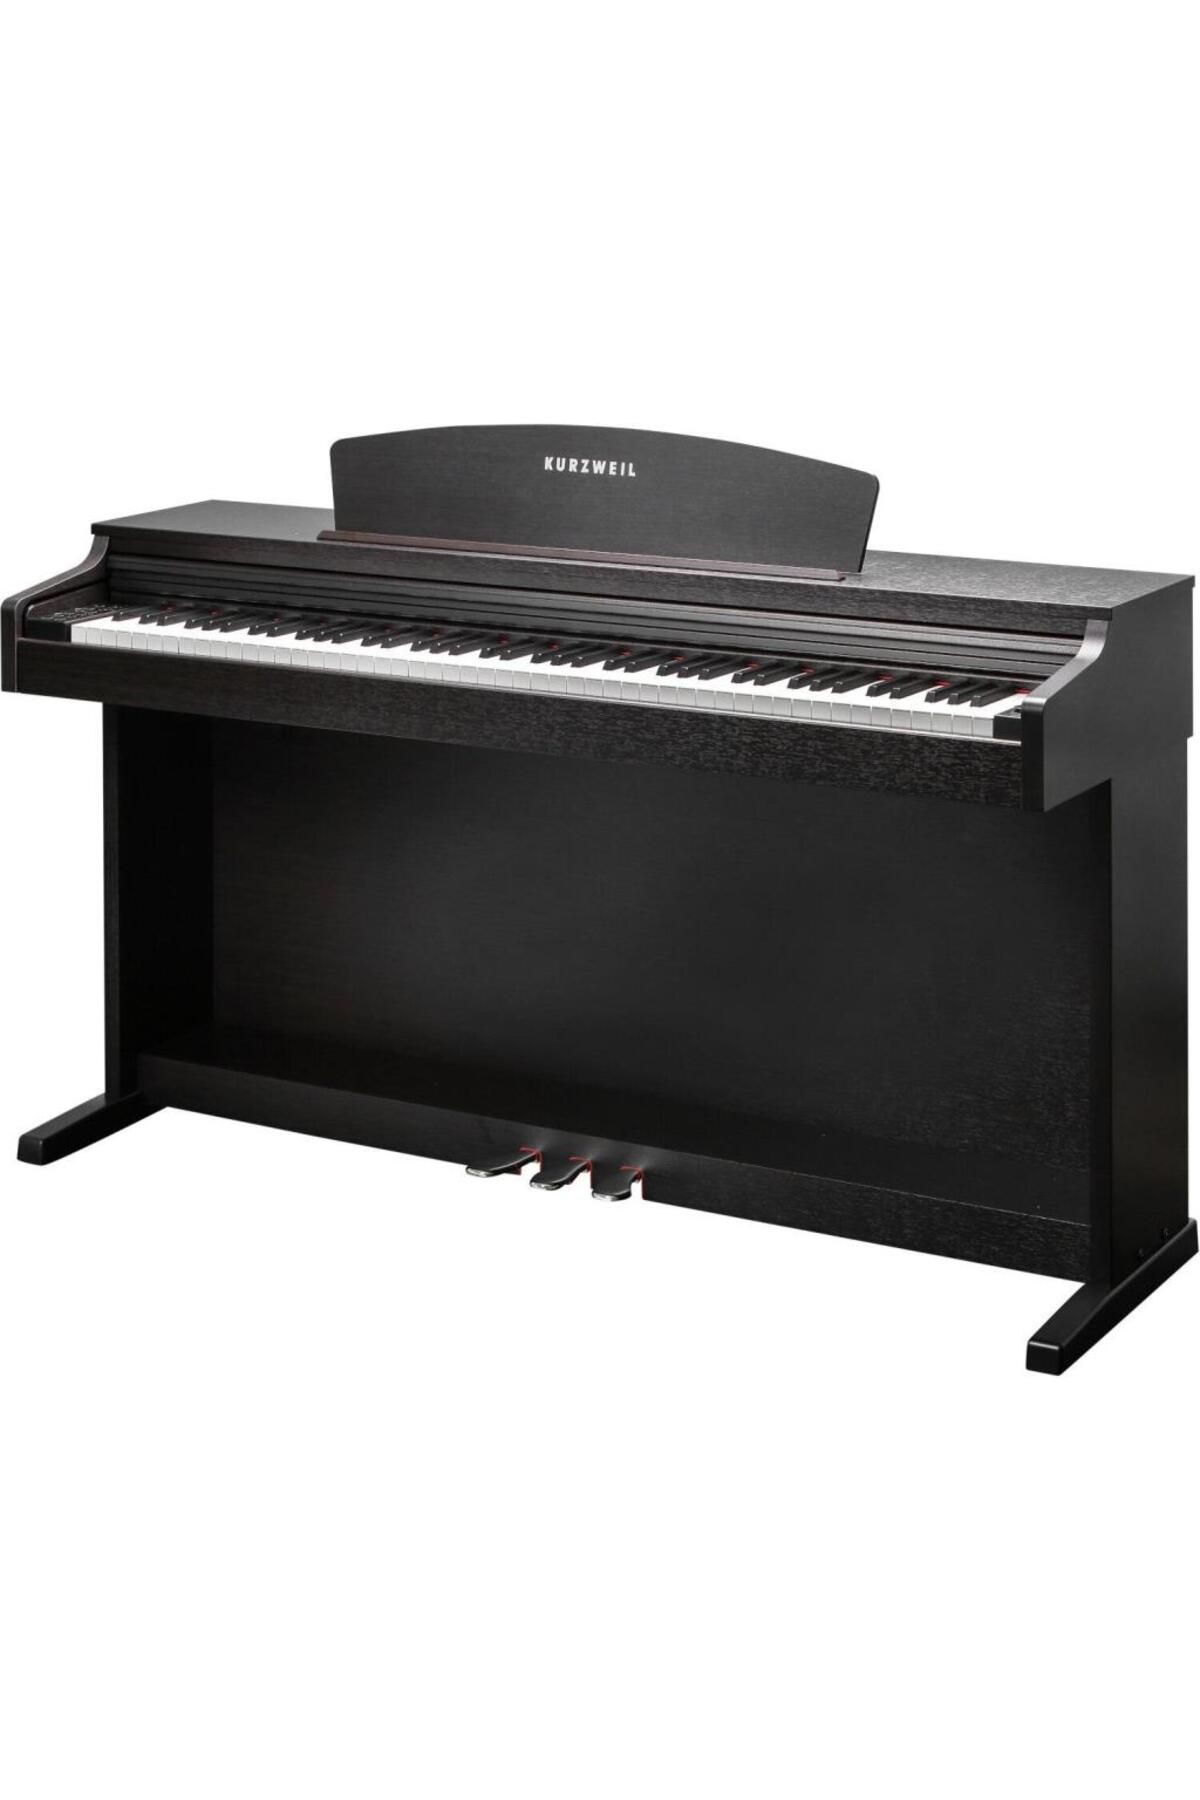 Kurzweil M115-sr Dijital Piyano (TABURE KULAKLIK)